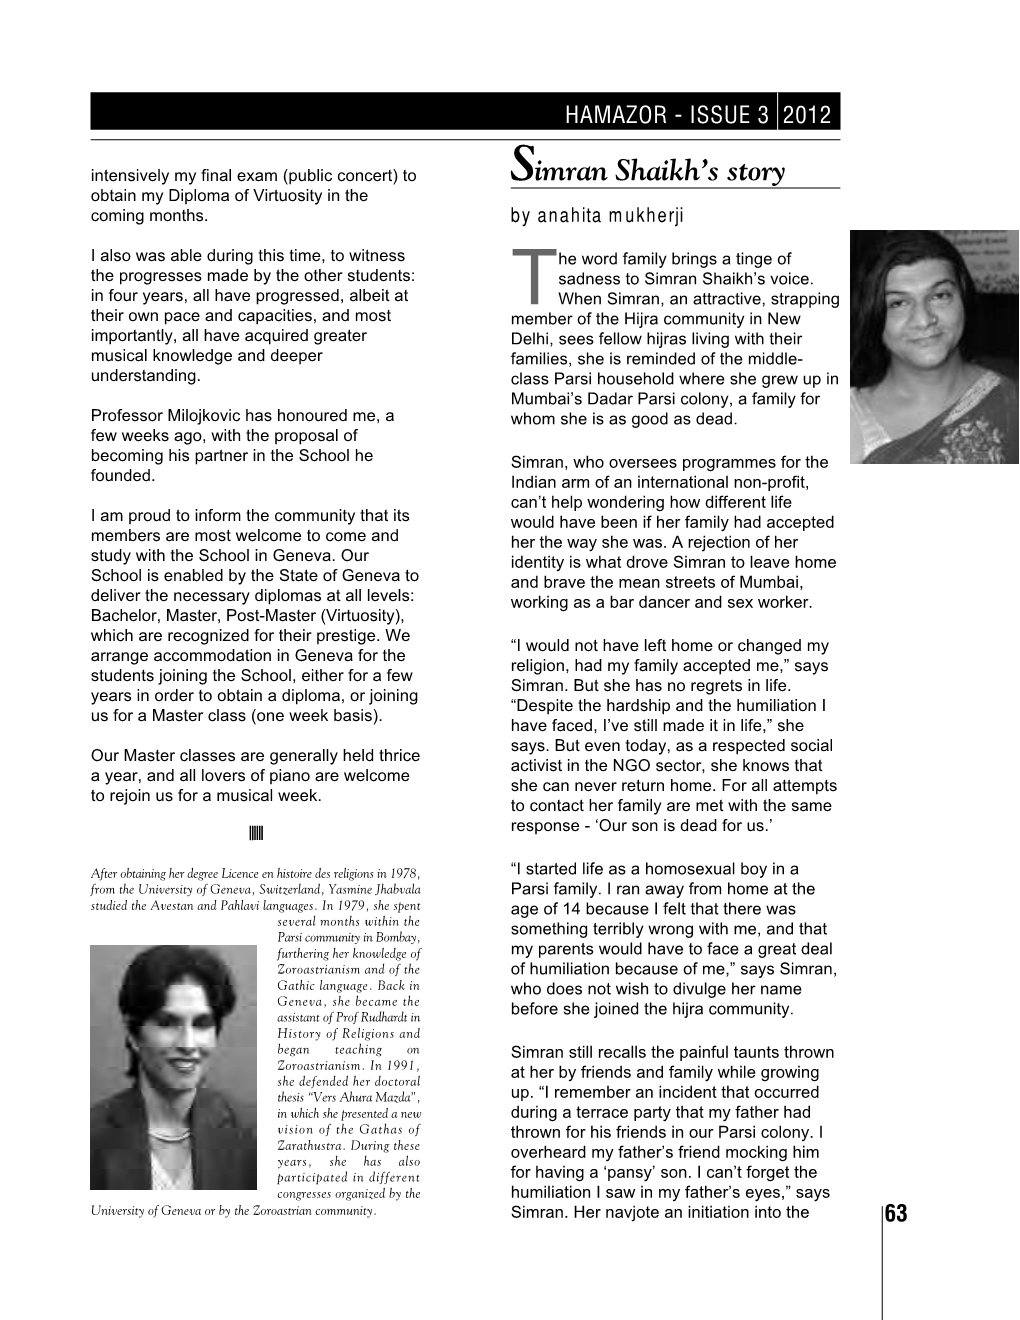 Simran Shaikh's Story